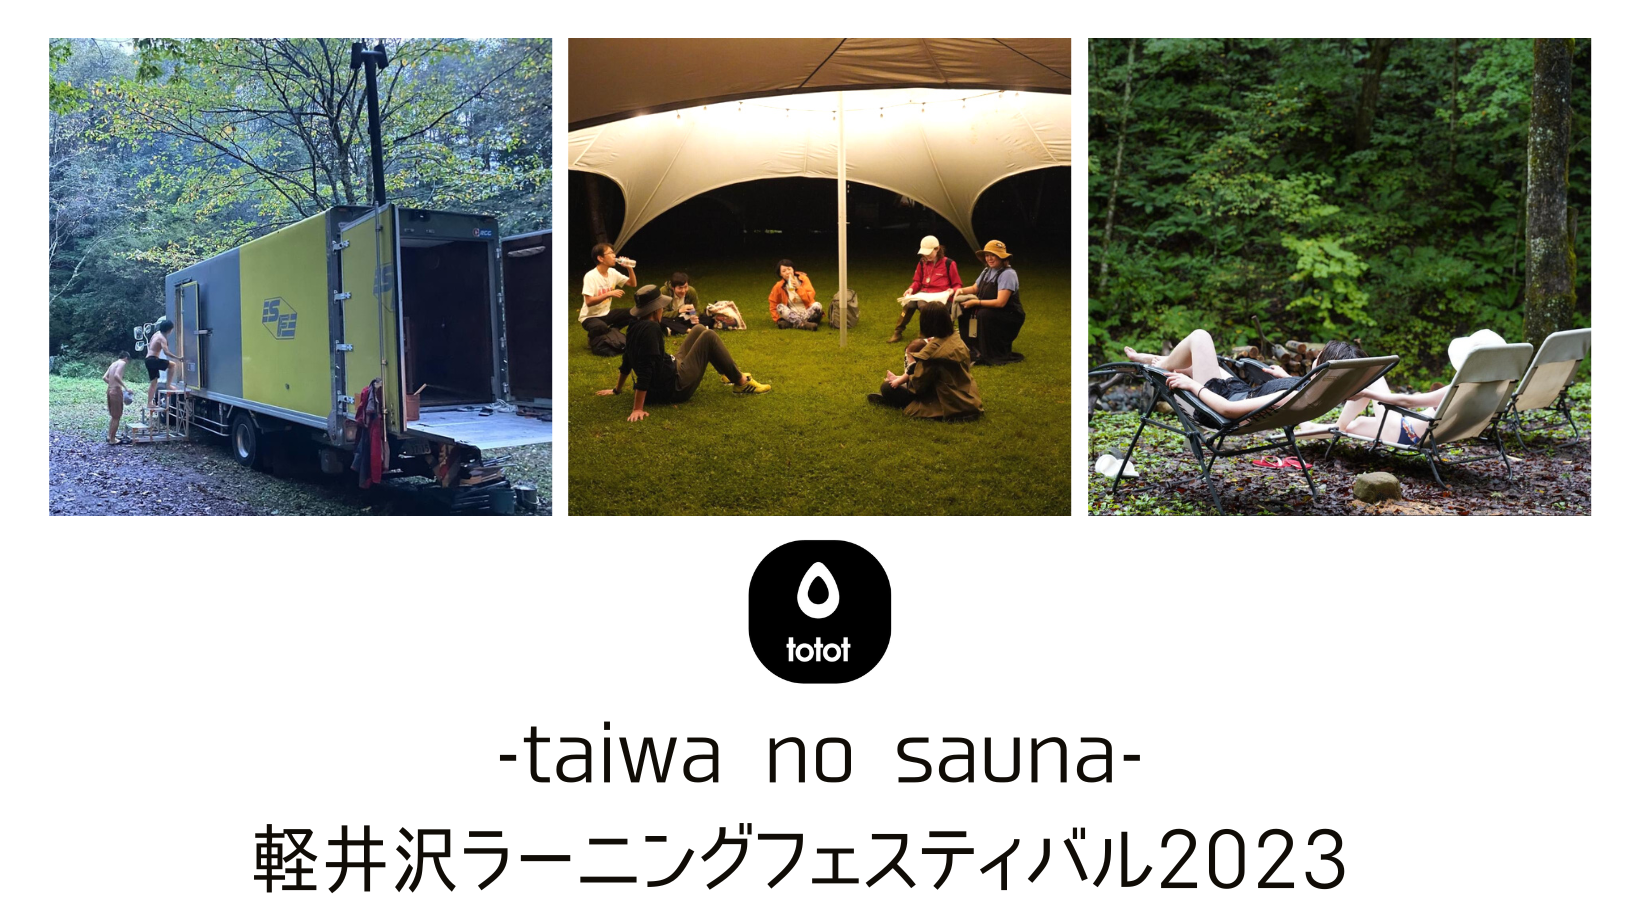 Give & Fun!「軽井沢ラーニングフェスティバル2023」にて、とっておきの体験をお届けしました　#totot